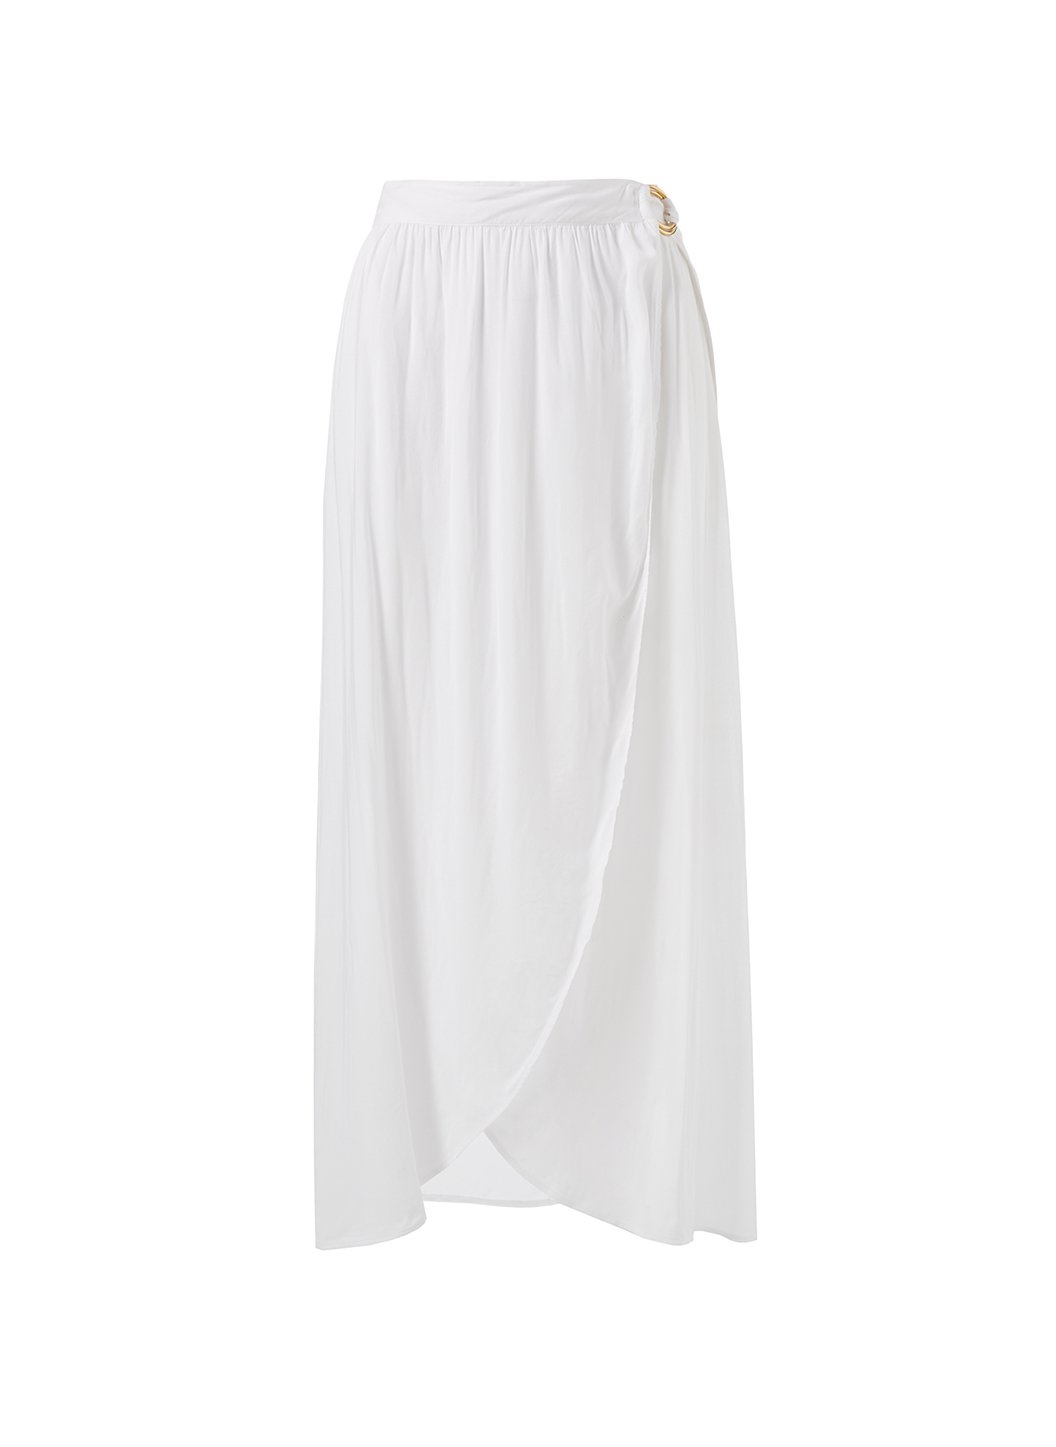 Melissa Odabash Devlin White Wrap Skirt | Official Website